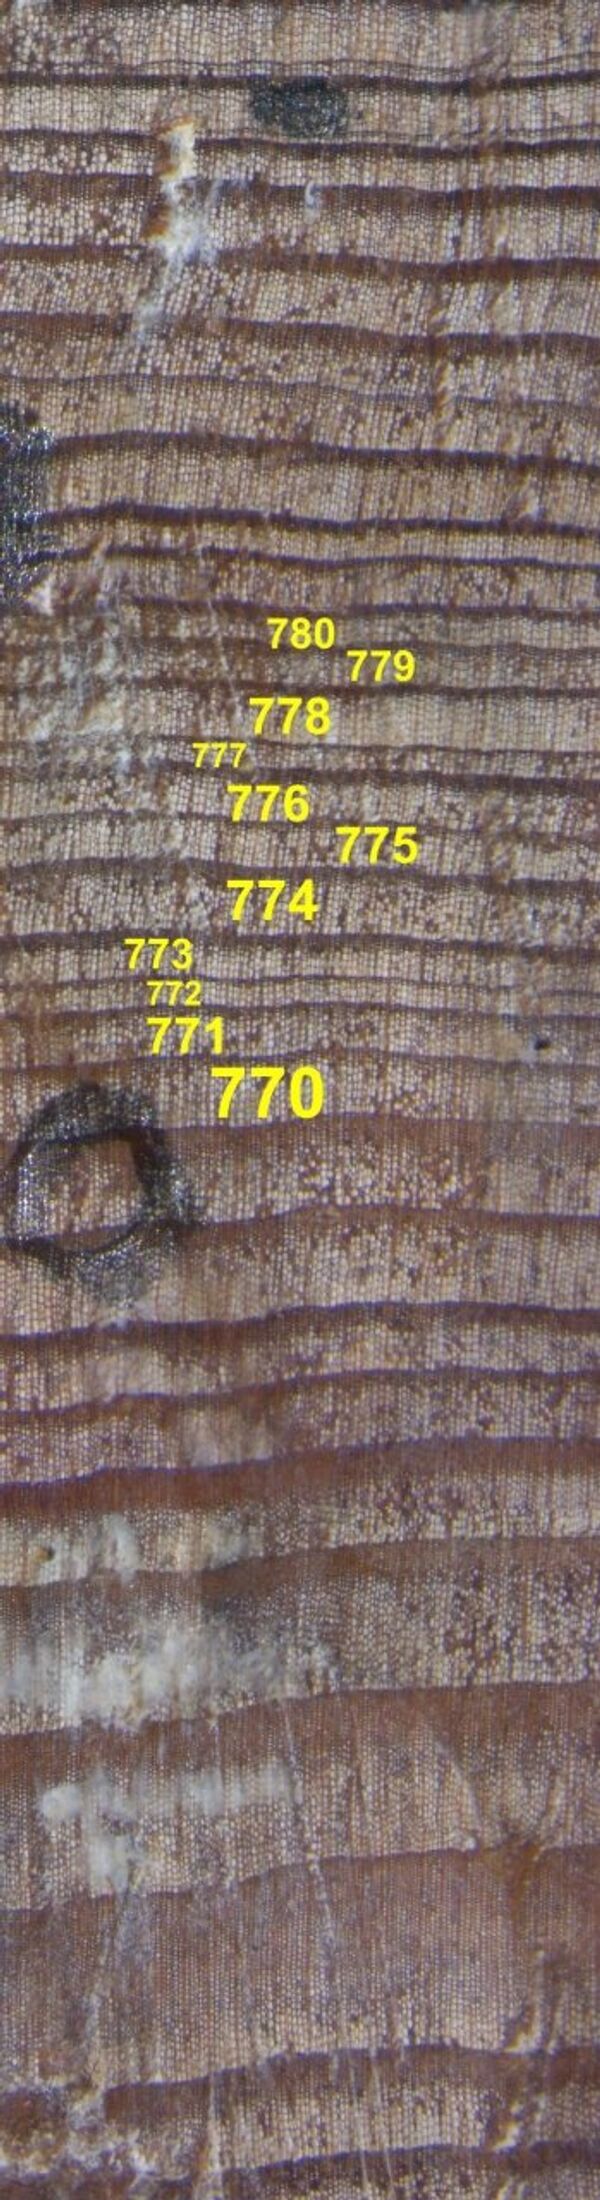 Образец ископаемой древесины с Полярного Урала с кольцами, относящимися к 770 - 780 гг. н.э.